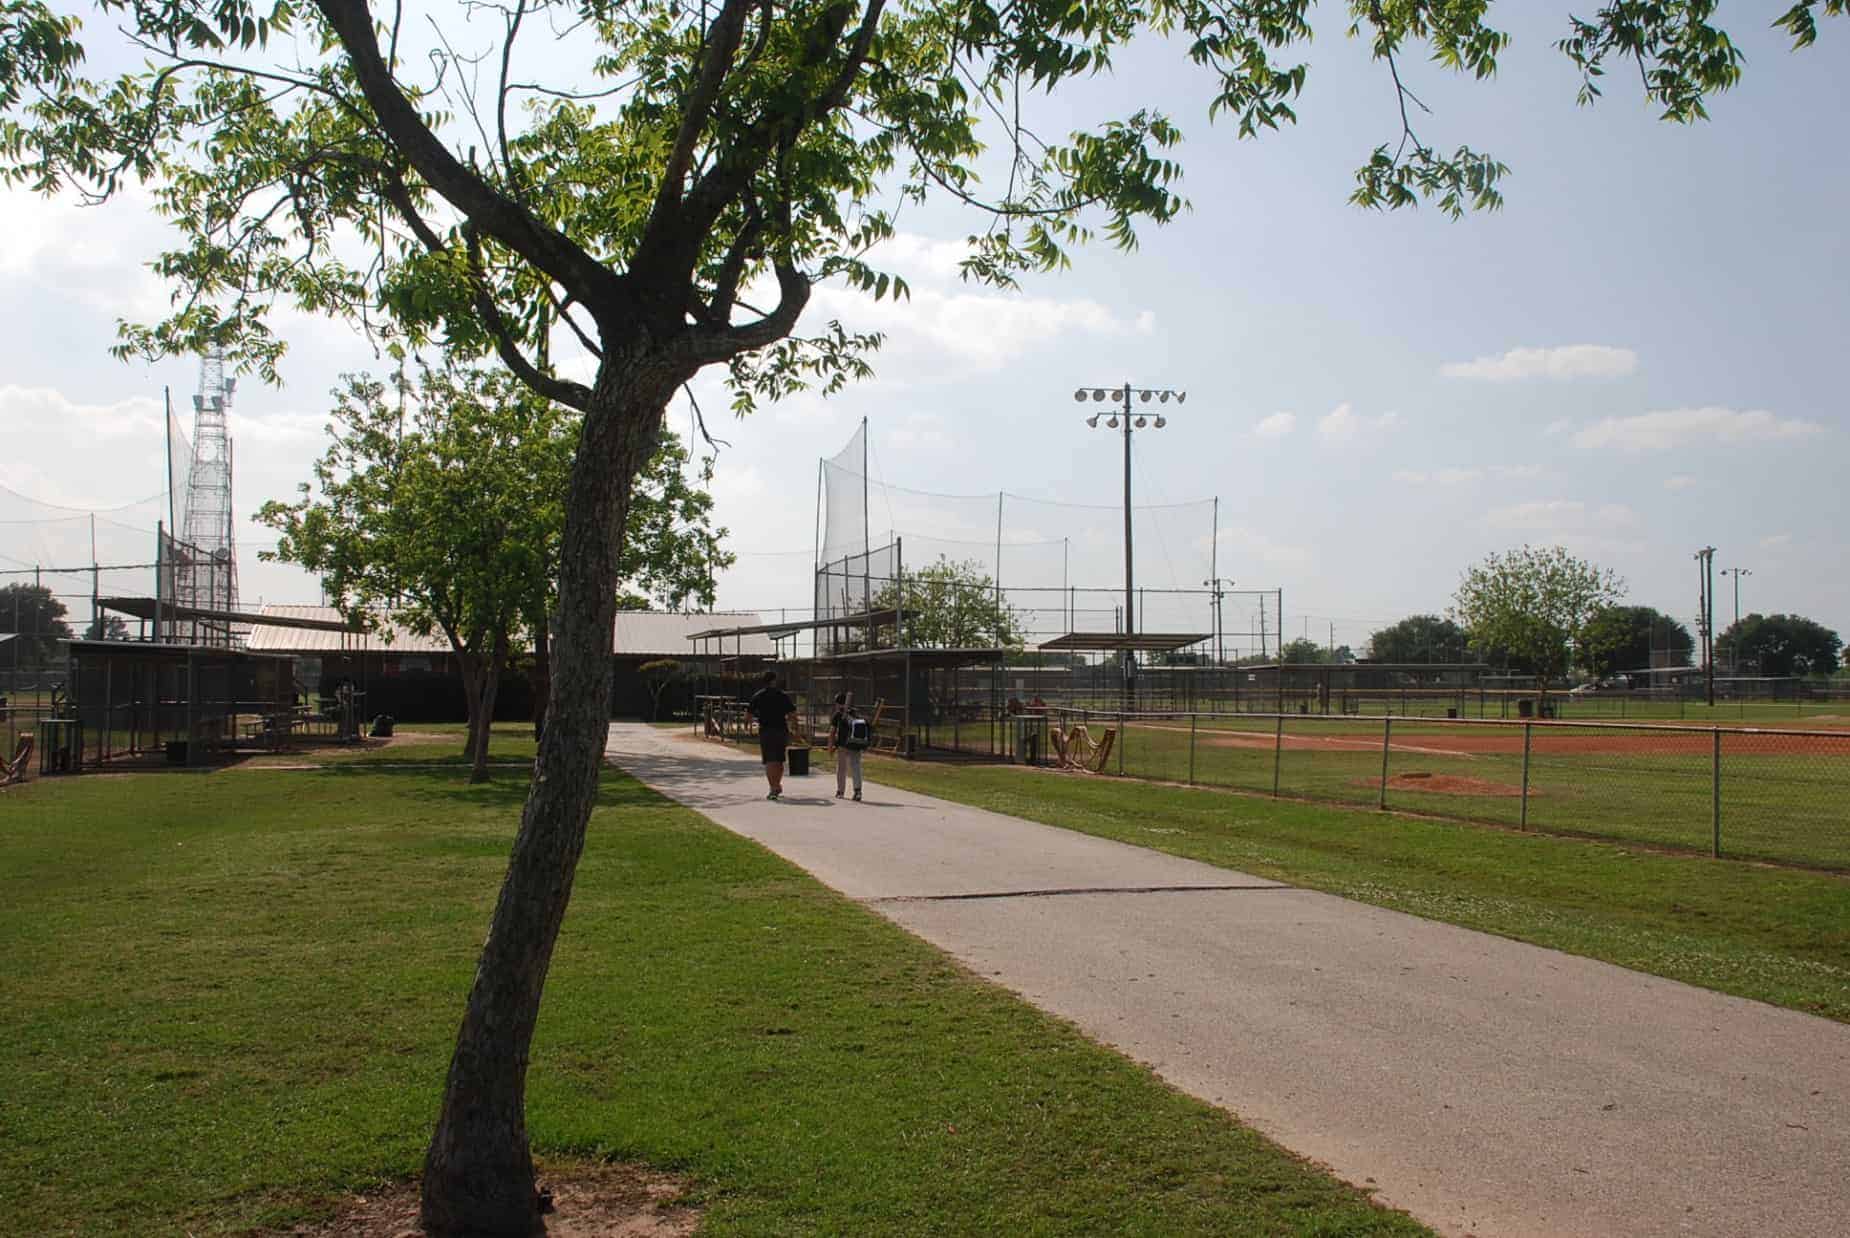 Baseball fields at Katy Park Katy TX